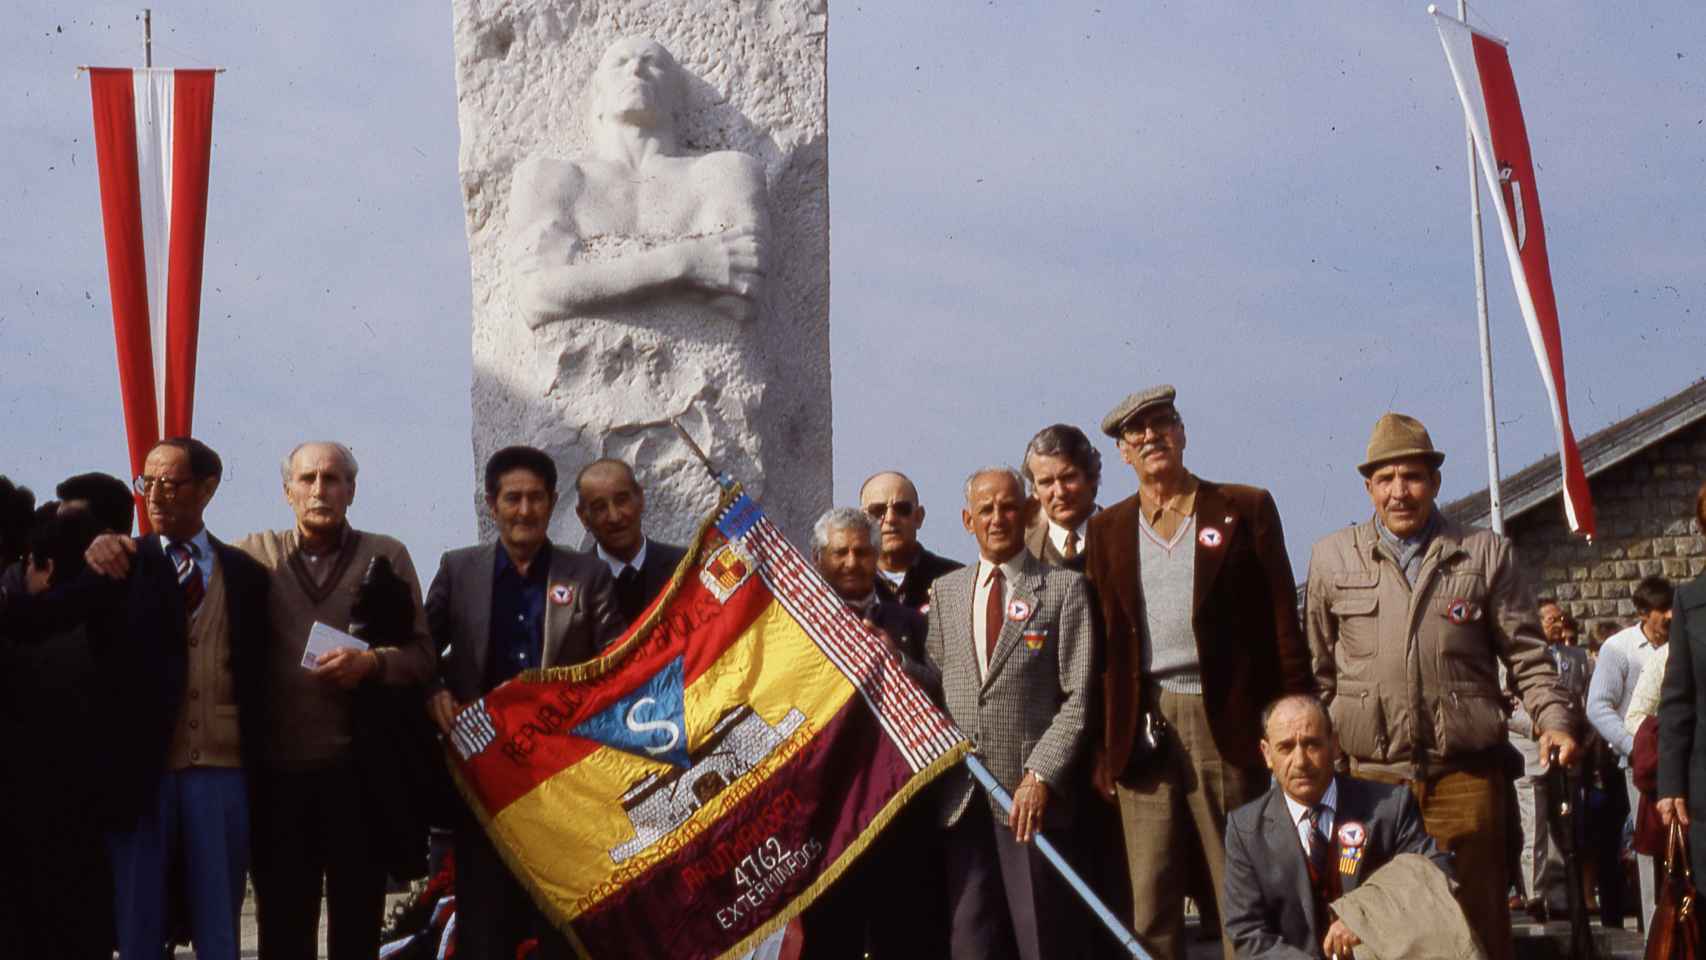 Homenaje a los supervivientes españoles de Mauthausen, con Marcelino sujetando por la esquina la bandera republicana.